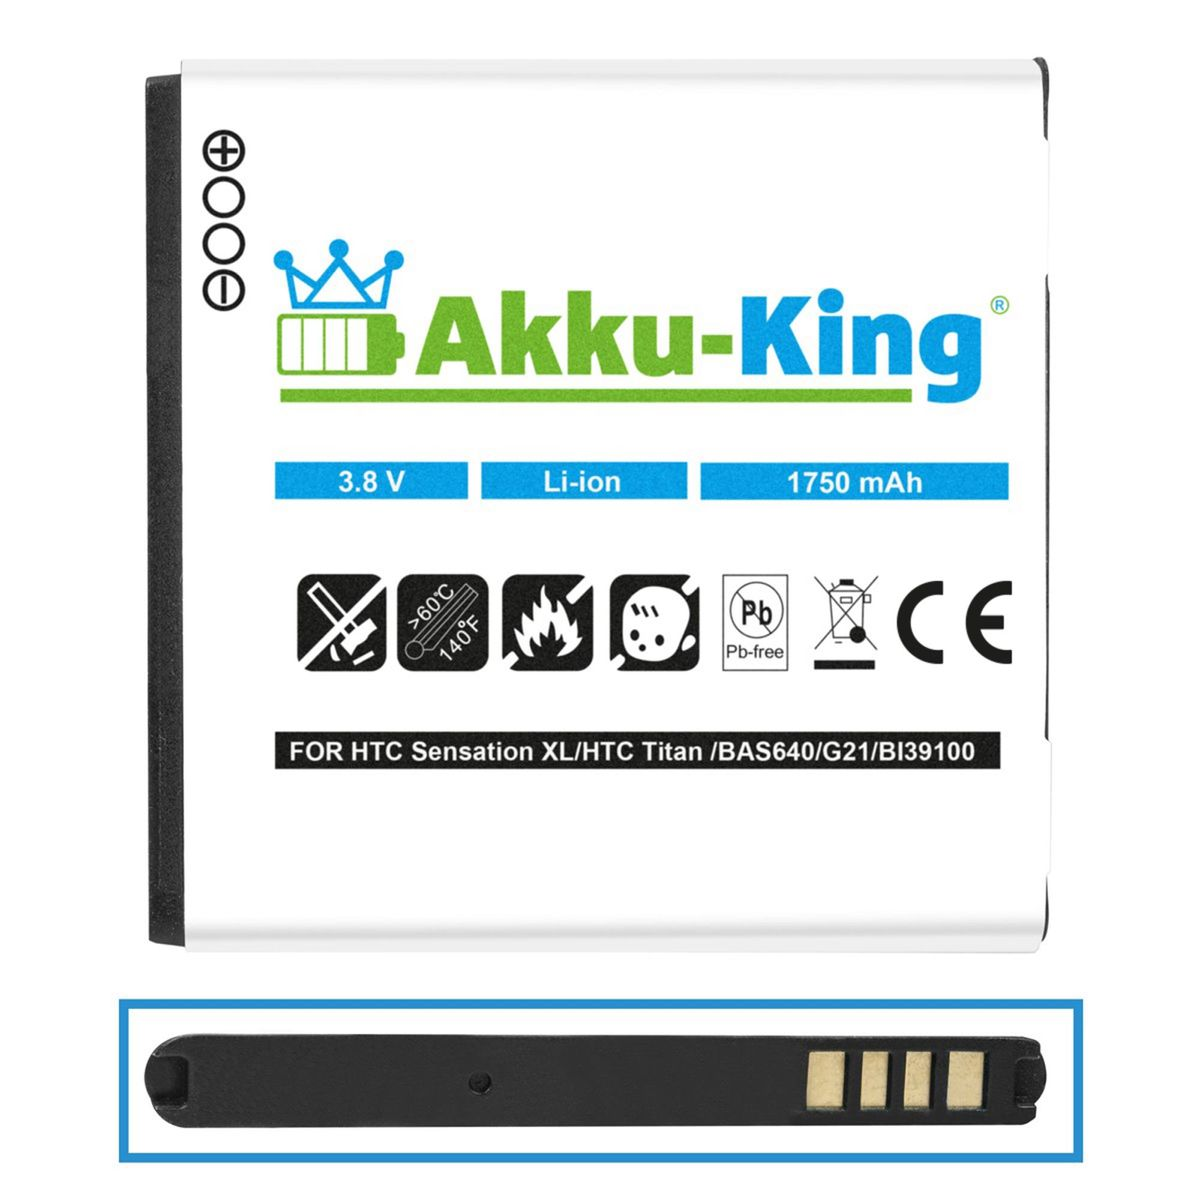 Volt, BA 3.8 Akku AKKU-KING mit Handy-Akku, 1750mAh Li-Ion S640 kompatibel HTC